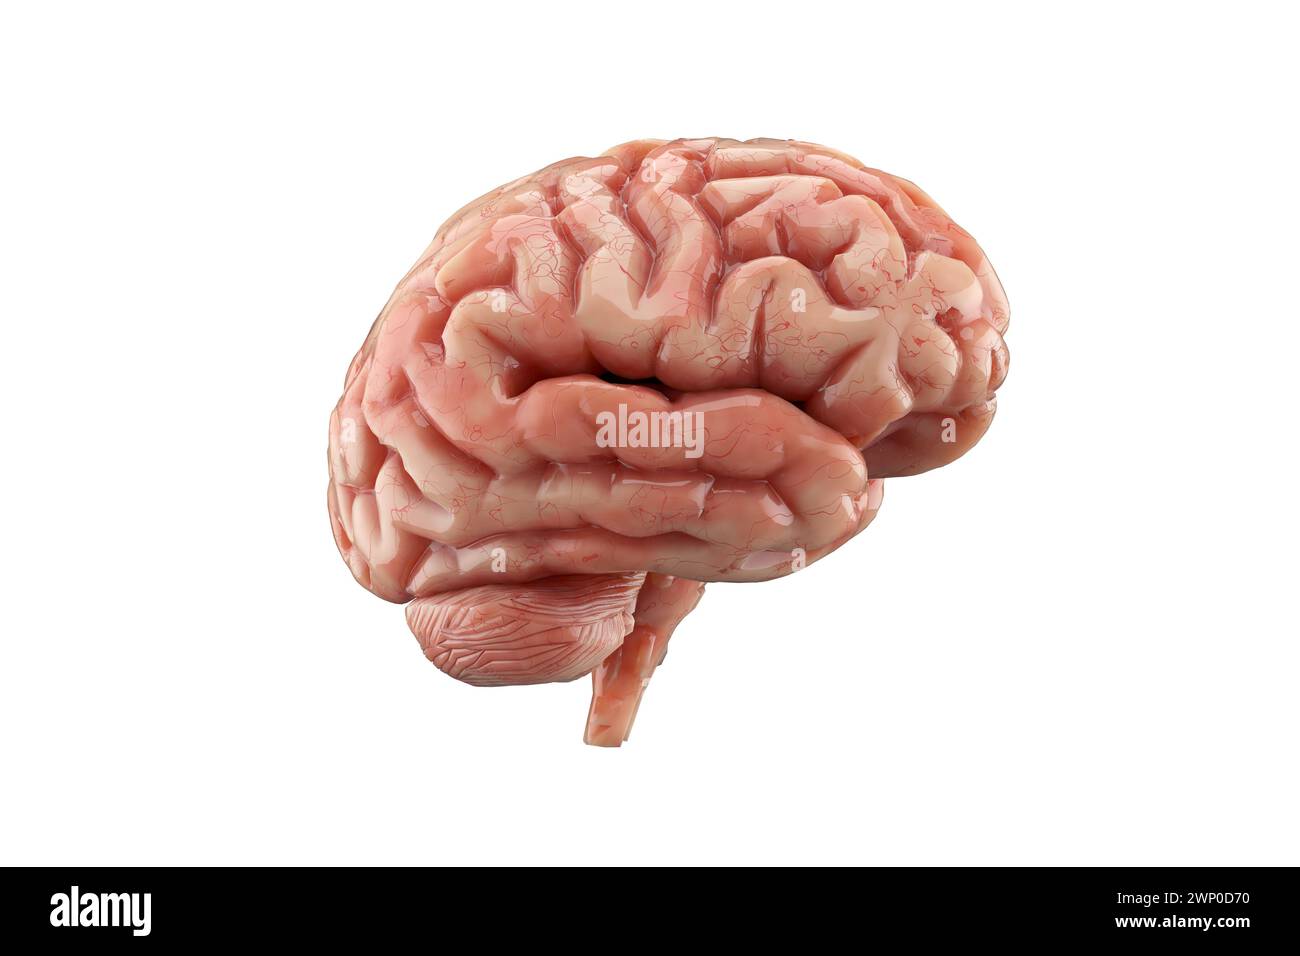 Menschliches Gehirn isoliert auf weißem Hintergrund. Denken, psychische Gesundheit, Neurologie und künstliche Intelligenz. 3D-Rendering. Stockfoto